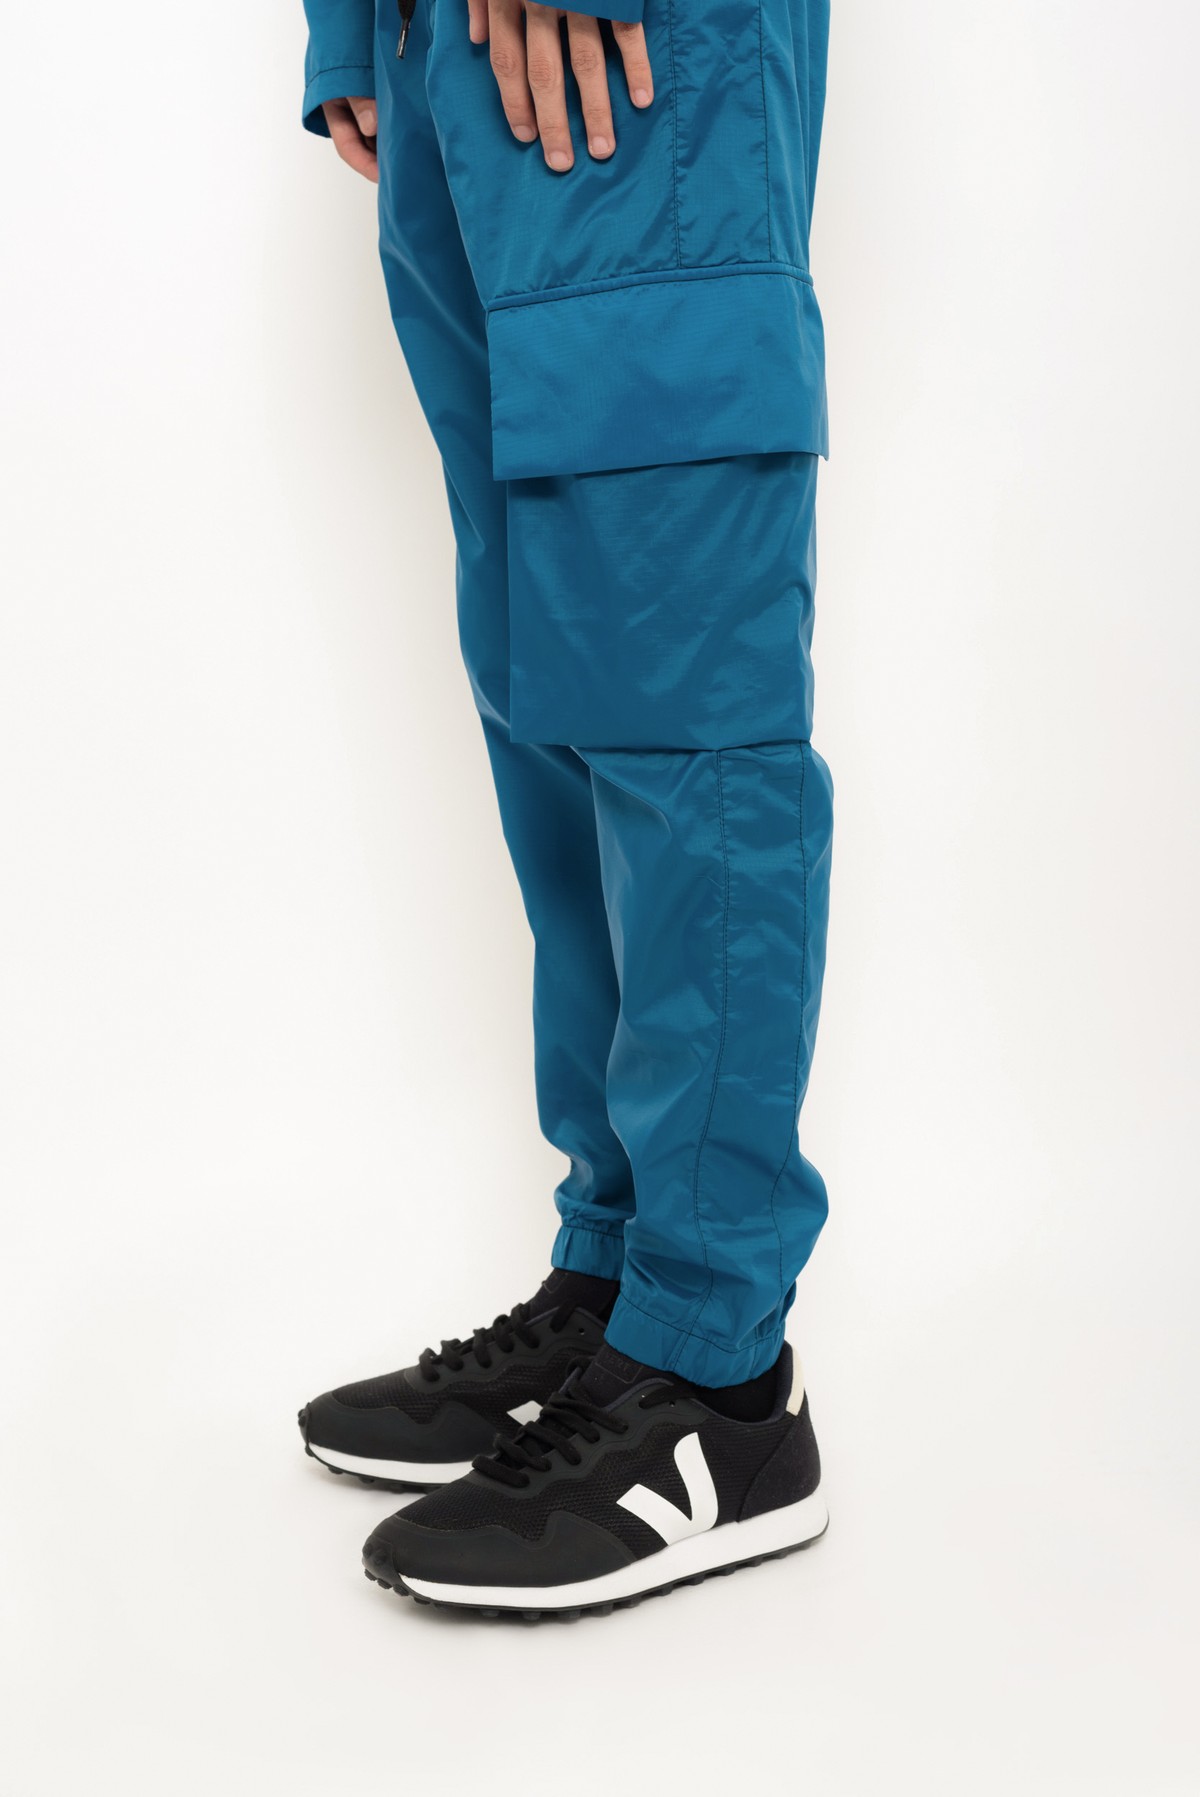 calça estilo esportiva em nylon regenerado ECONYL™